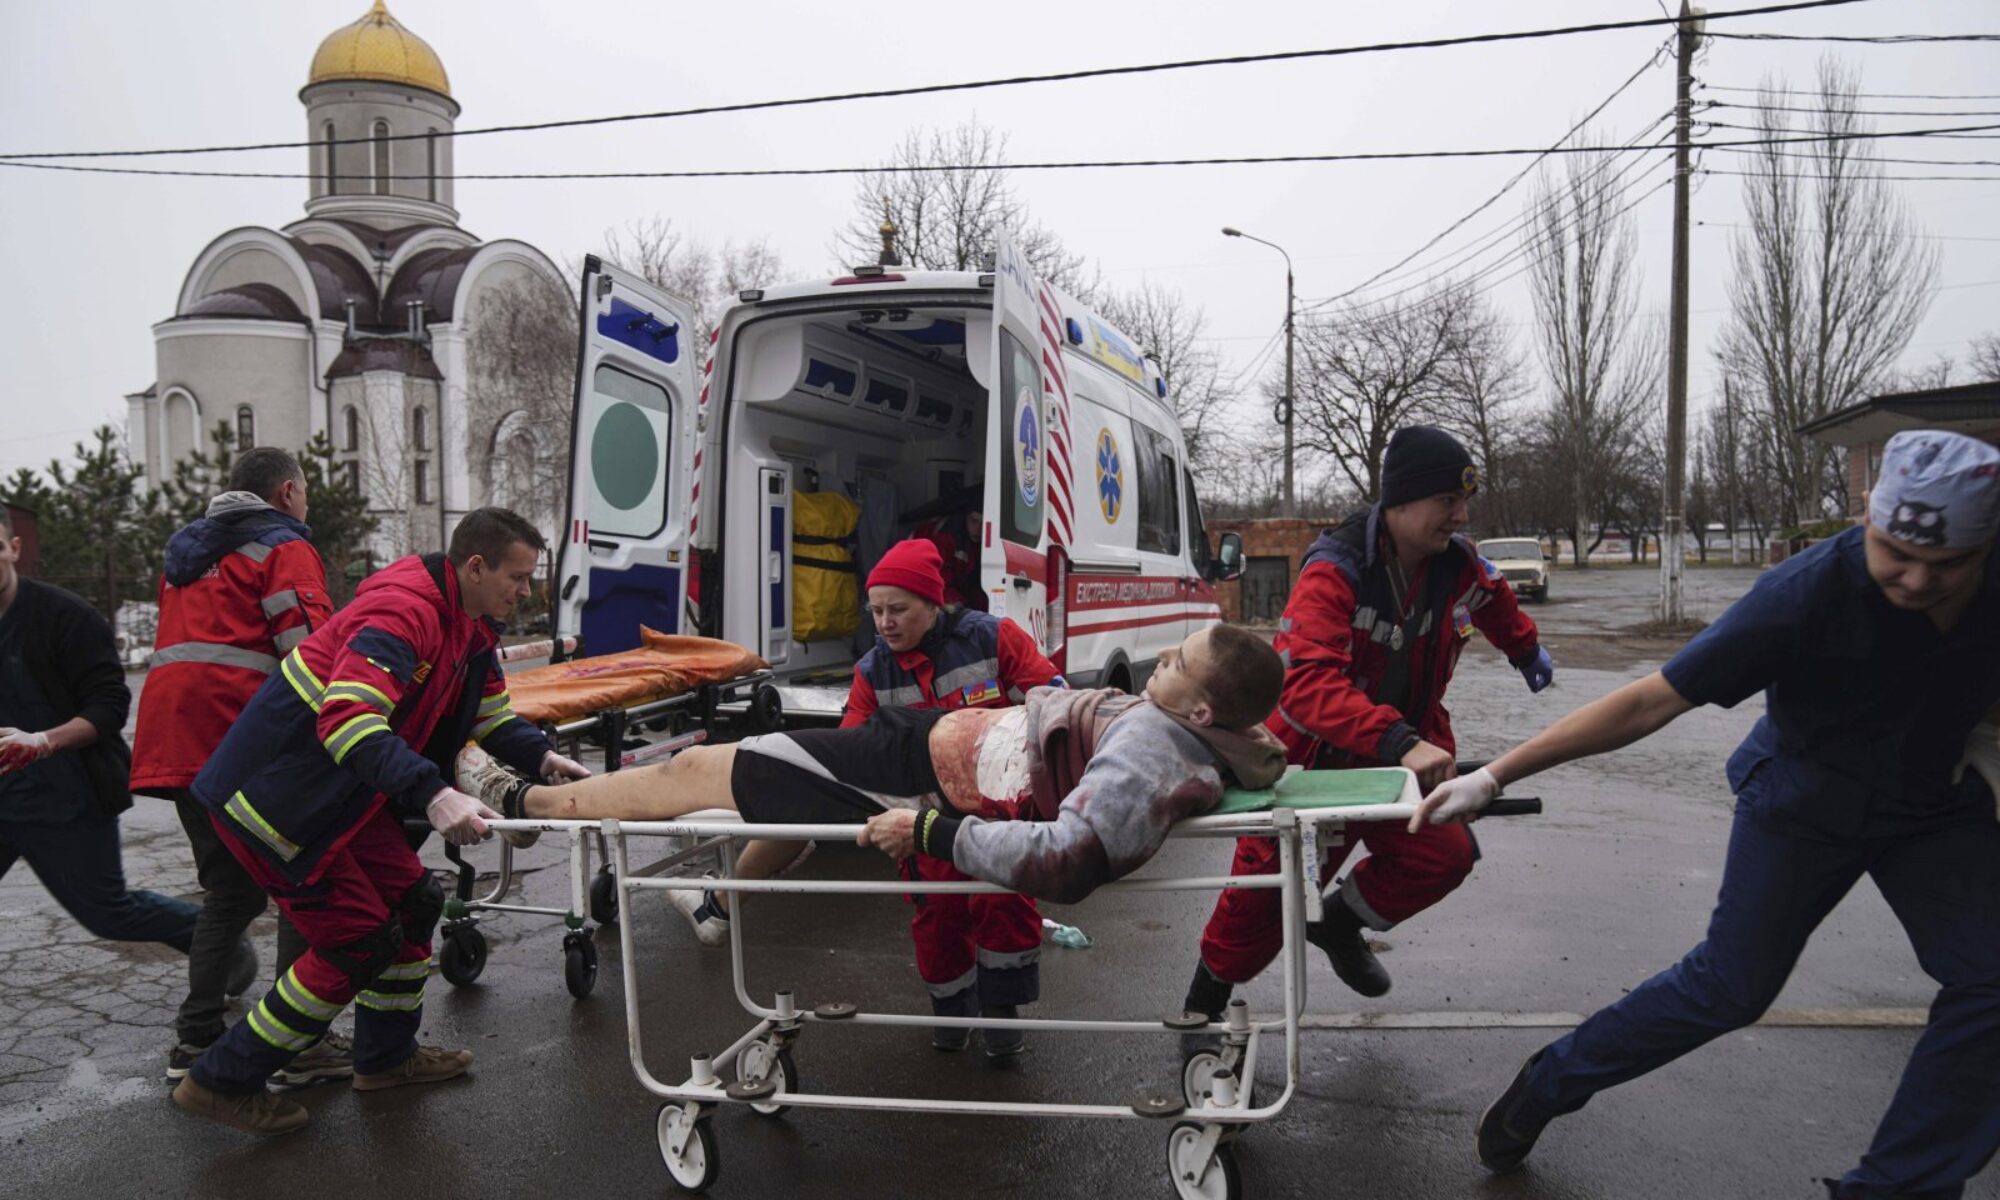 400 bin kişinin yaşadığı Mariupol’de ateşkes yürürlüğe girdi, tahliyeler başladı